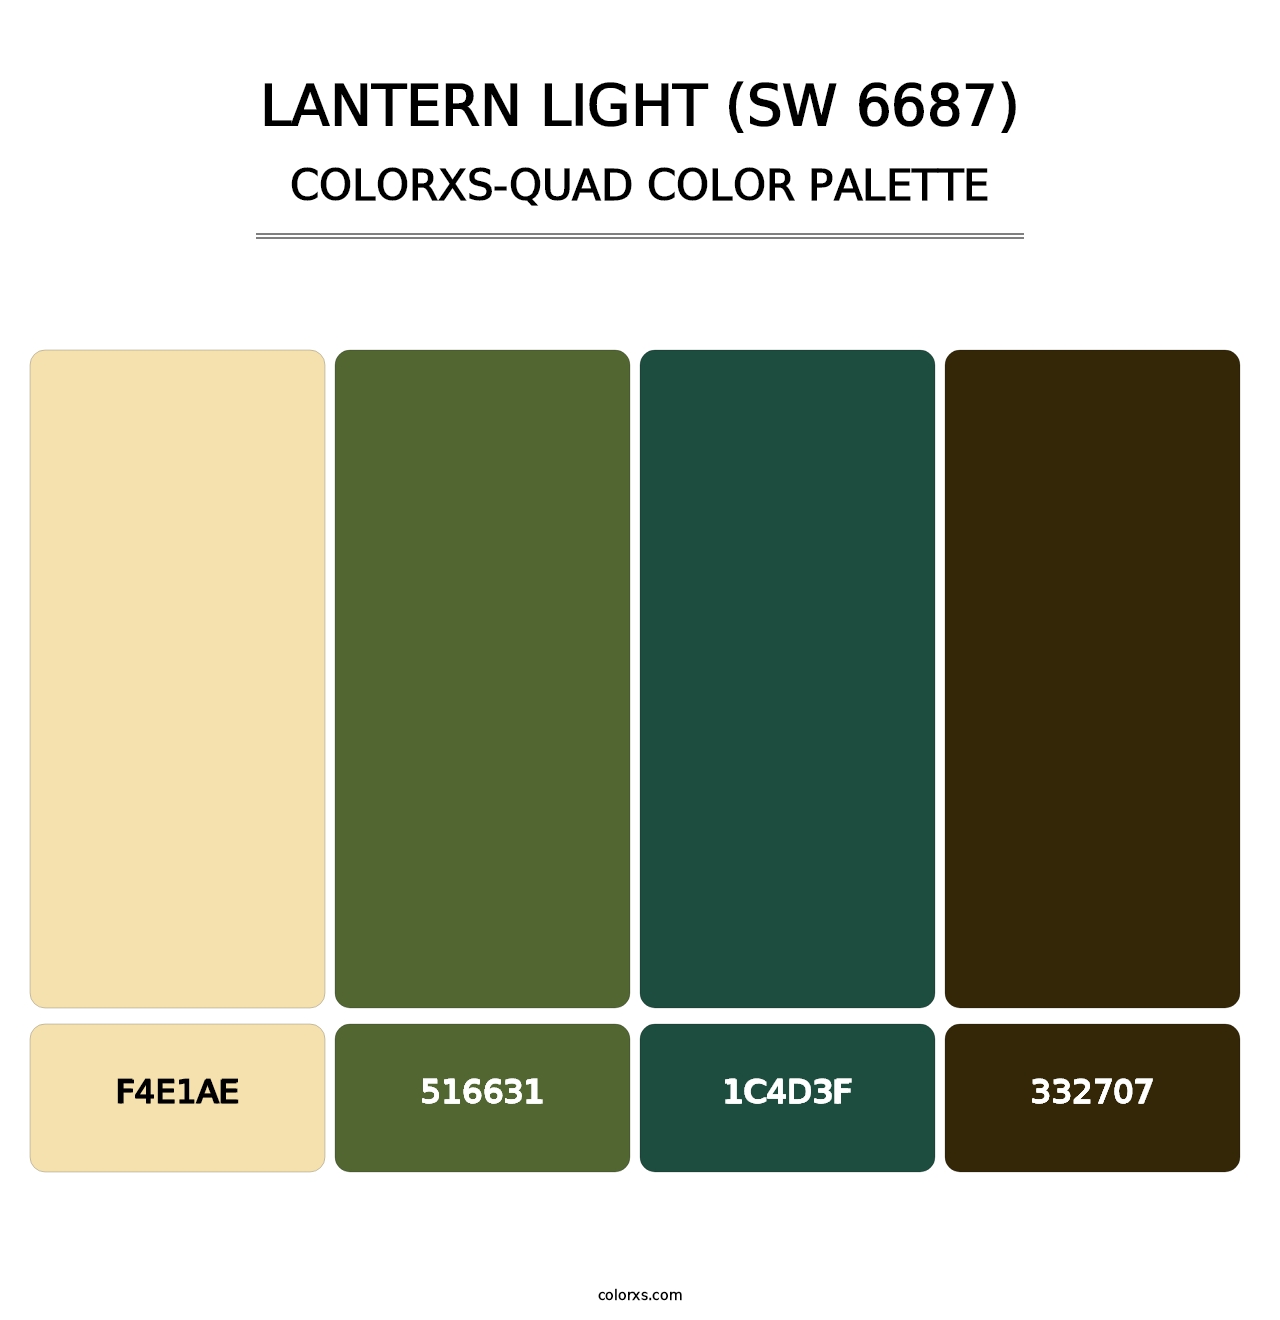 Lantern Light (SW 6687) - Colorxs Quad Palette